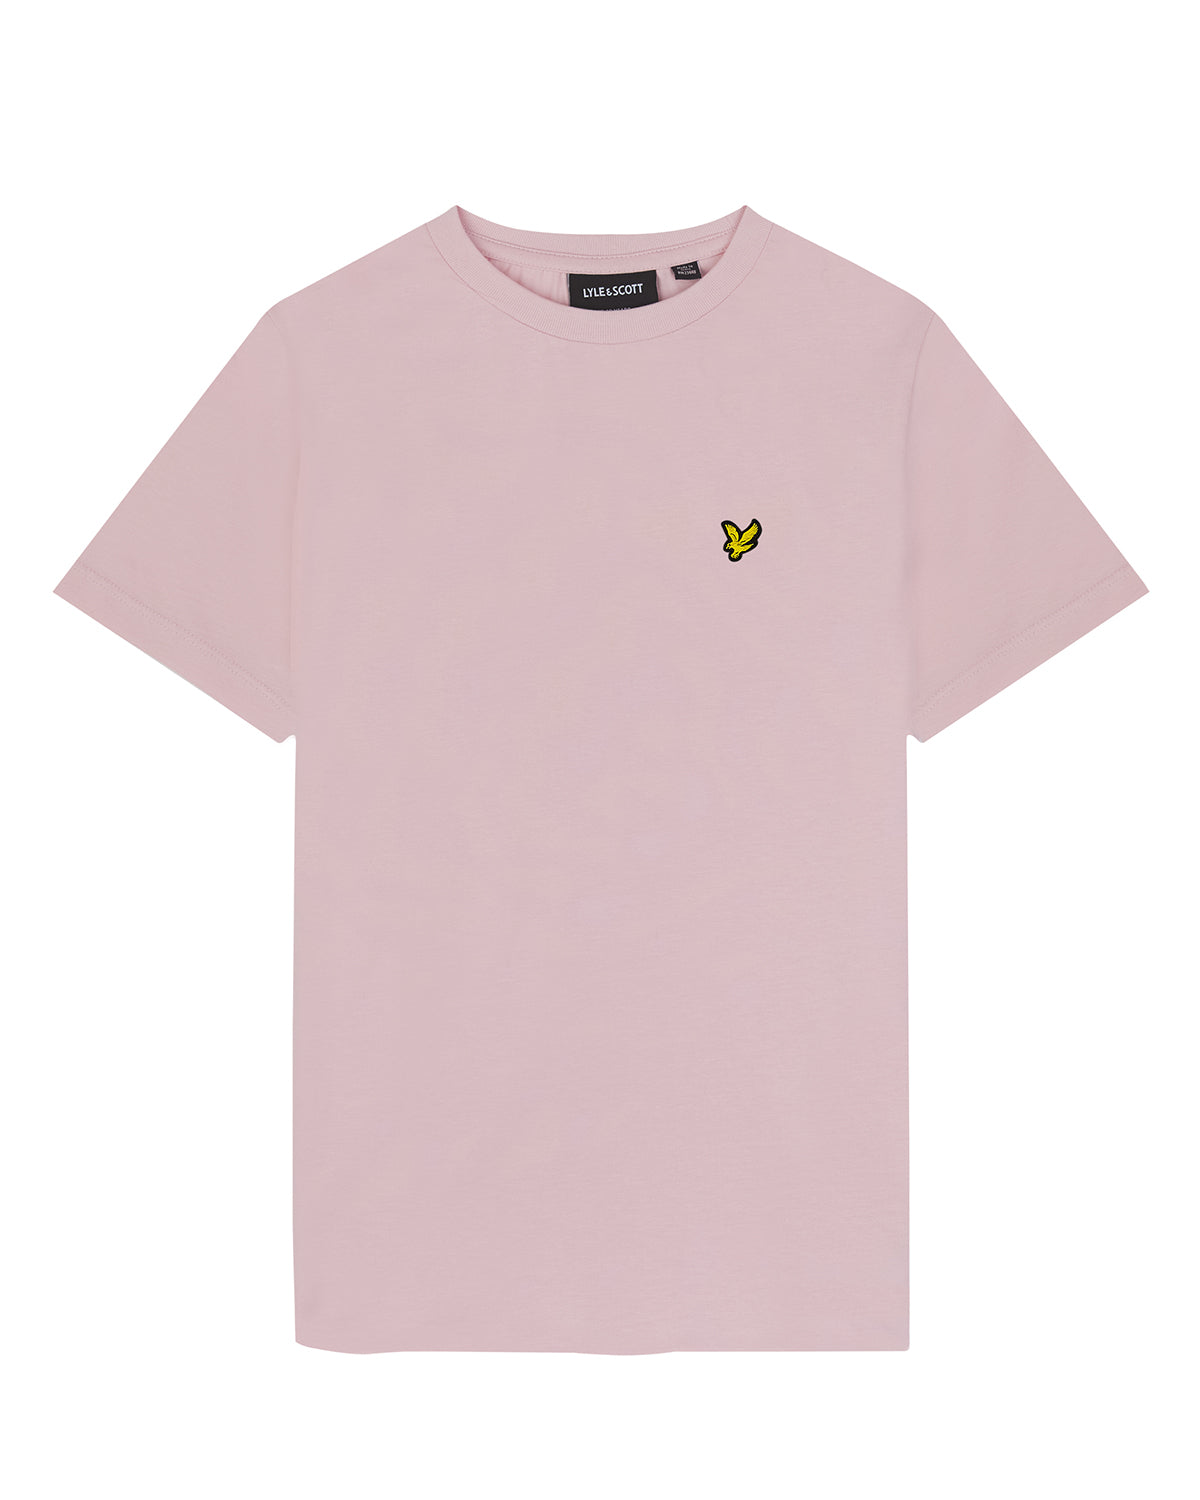 Jongens Plain T-shirt van Lyle & Scott in de kleur W488 Light Pink in maat 170-176.